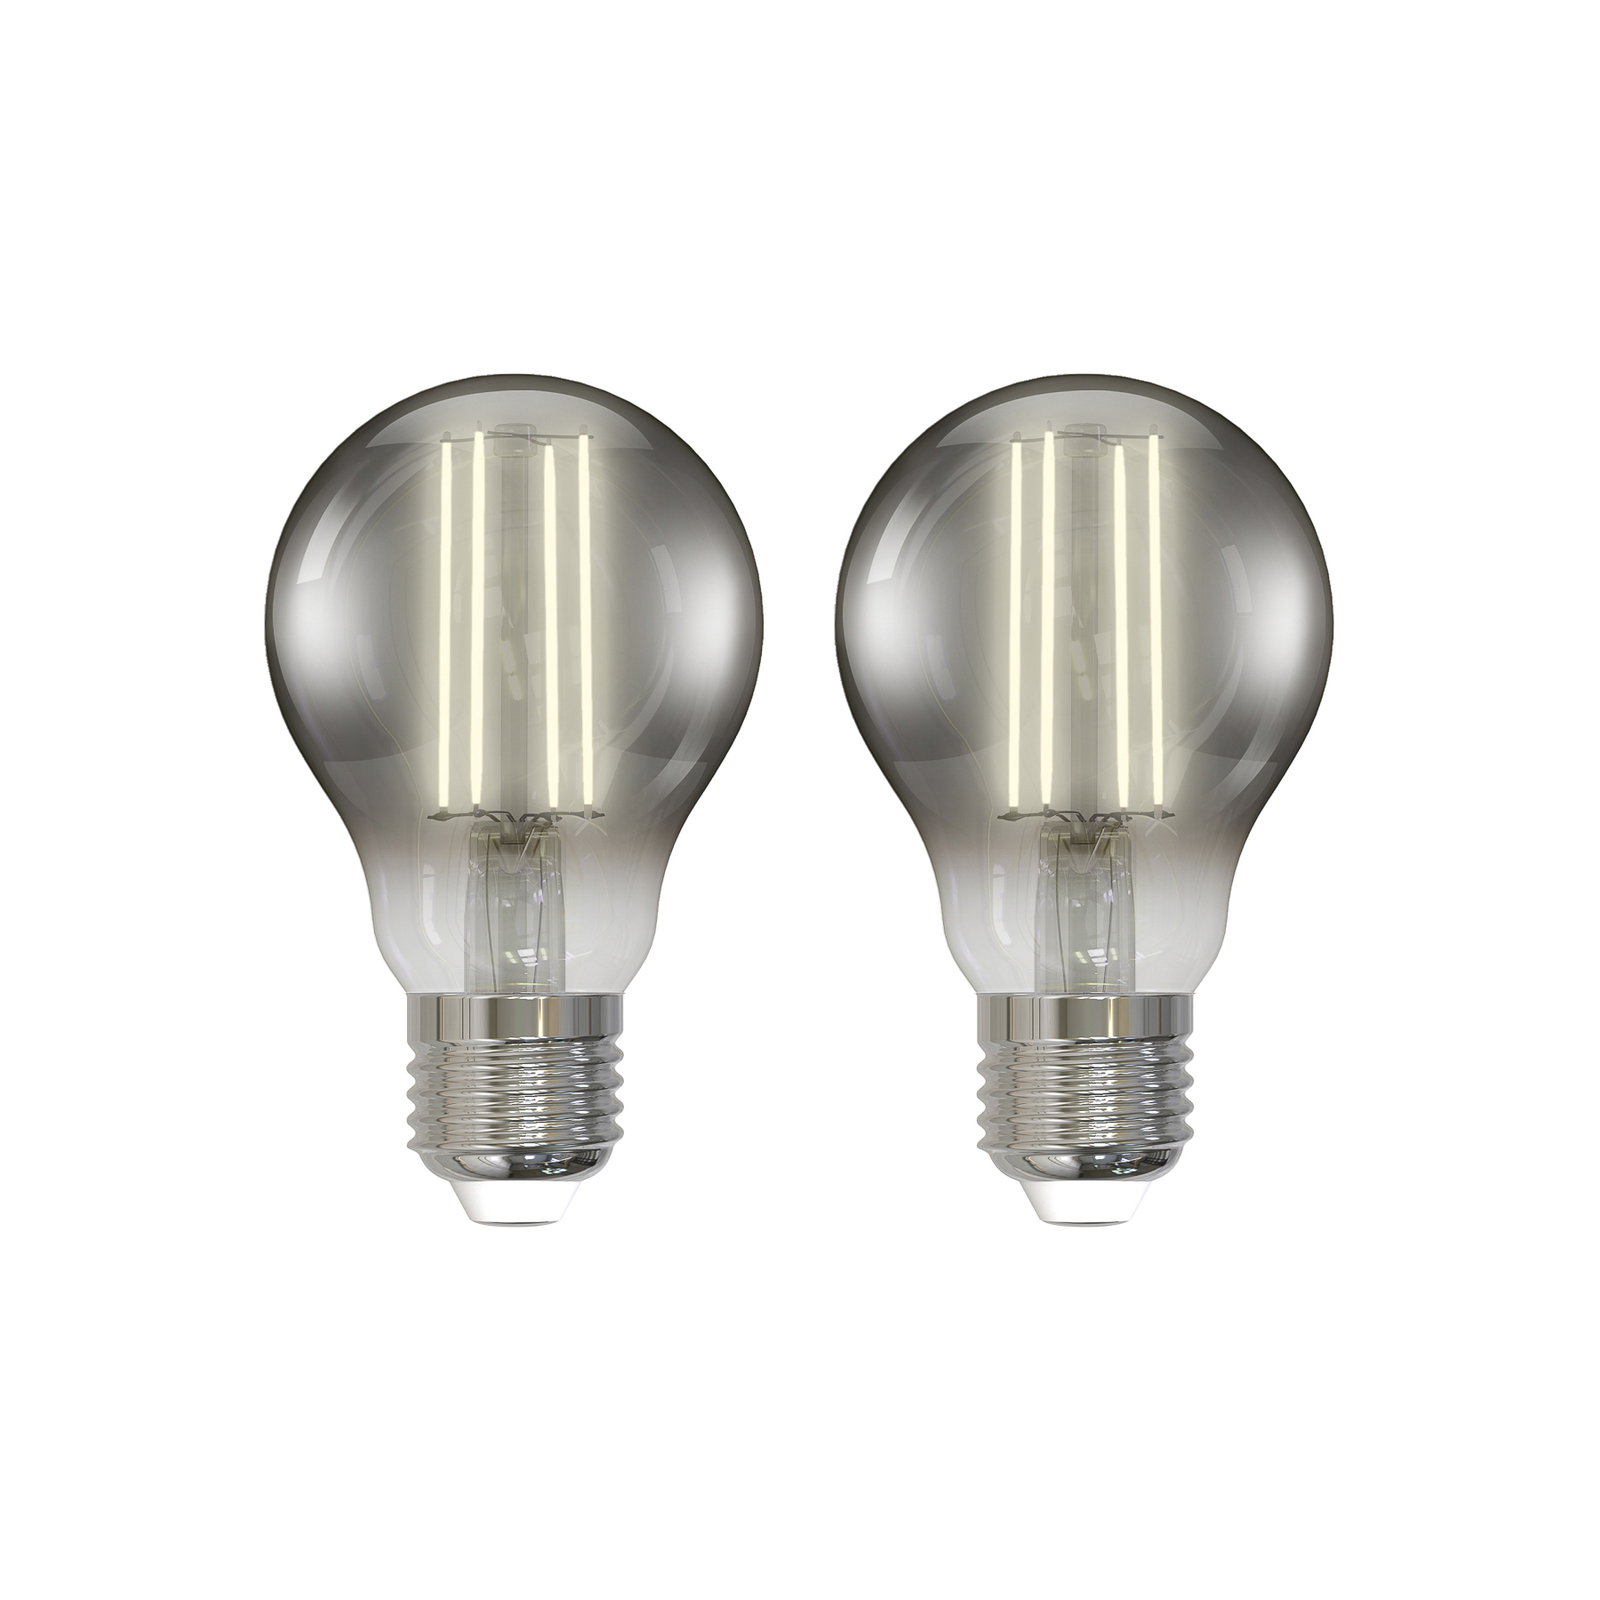 Prios LED-Filament rauchgrau E27 A60 4,9W, 2er-Set